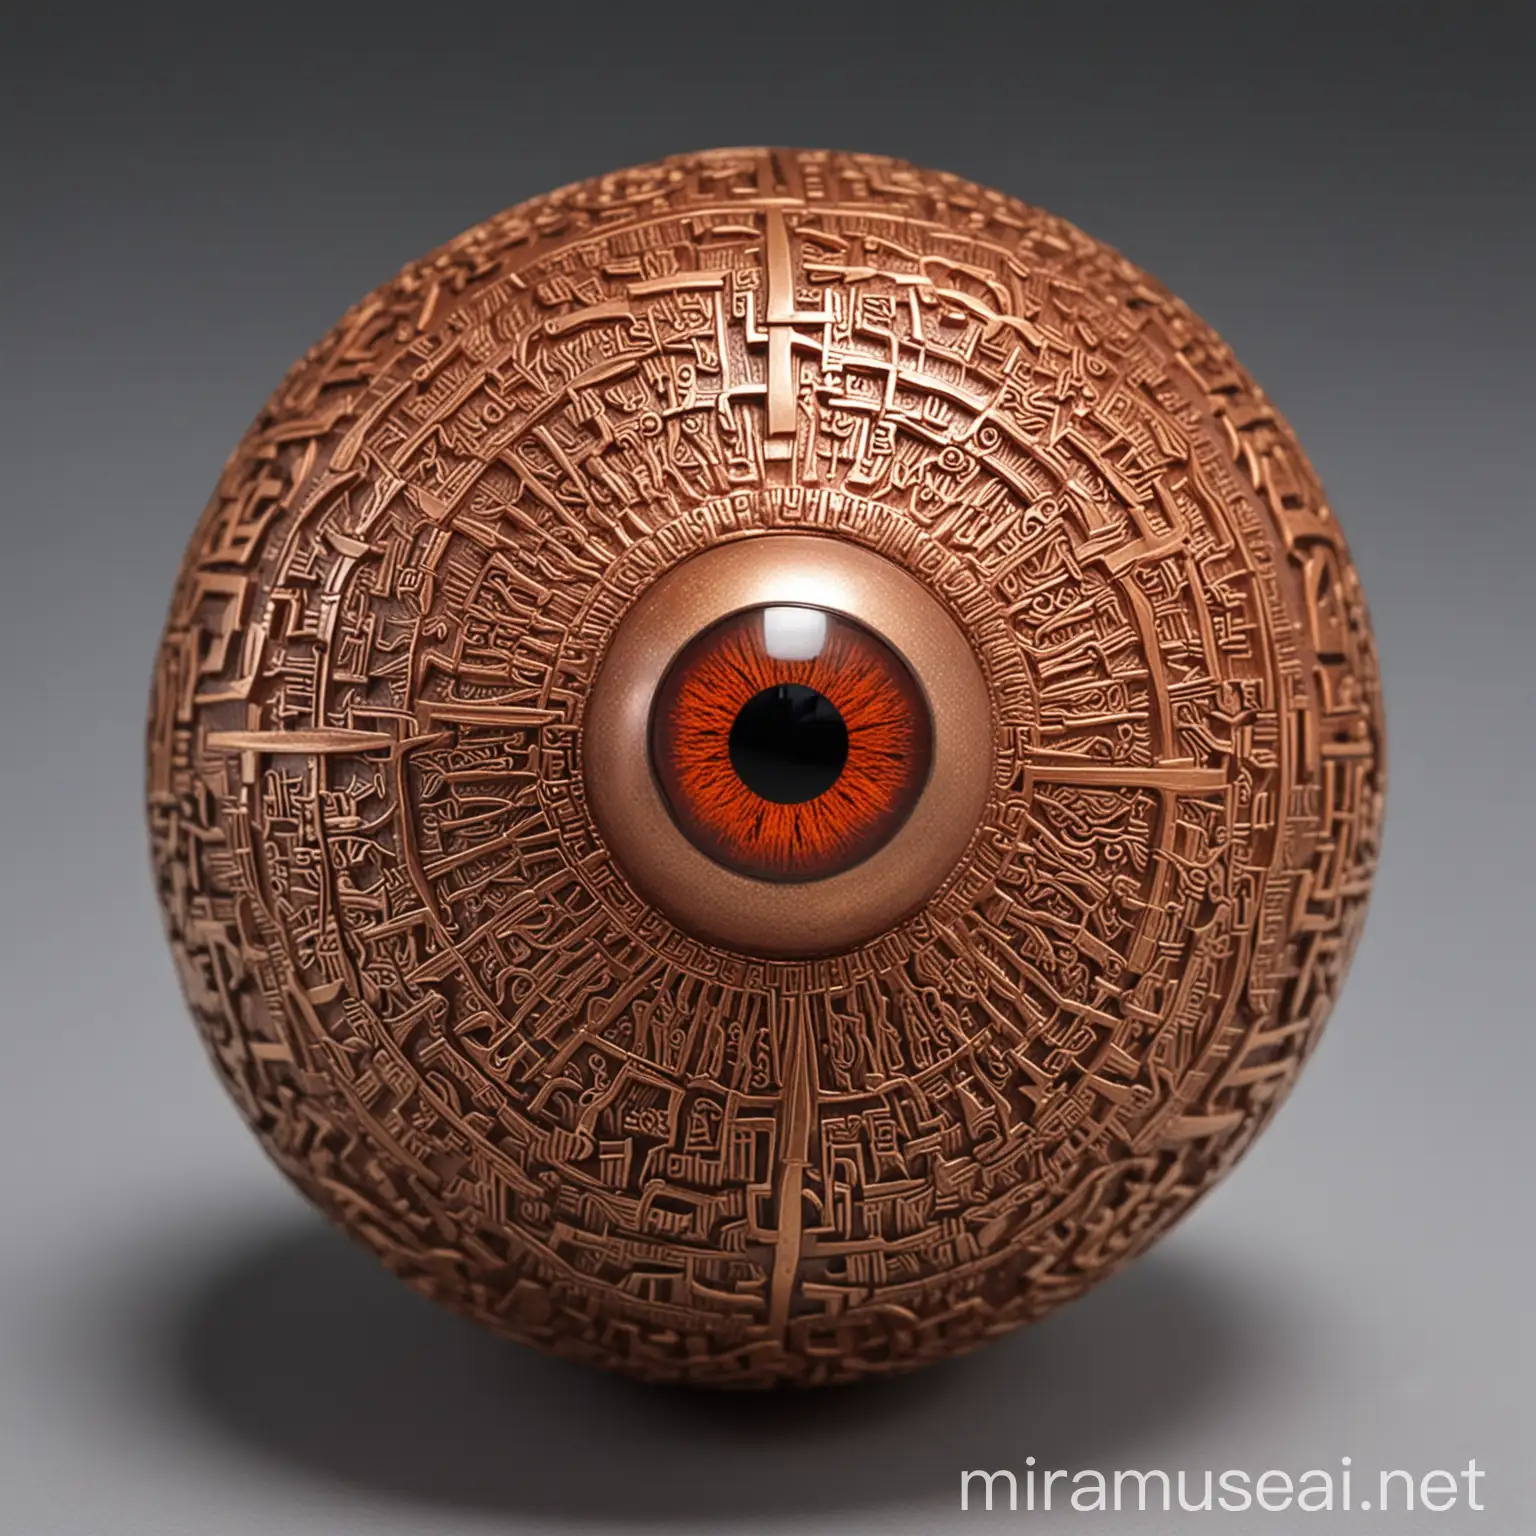 一个红色的铜球，雕刻着复杂的文字纹路，球上有一个的宝石雕刻的眼睛，眼睛是金色竖瞳